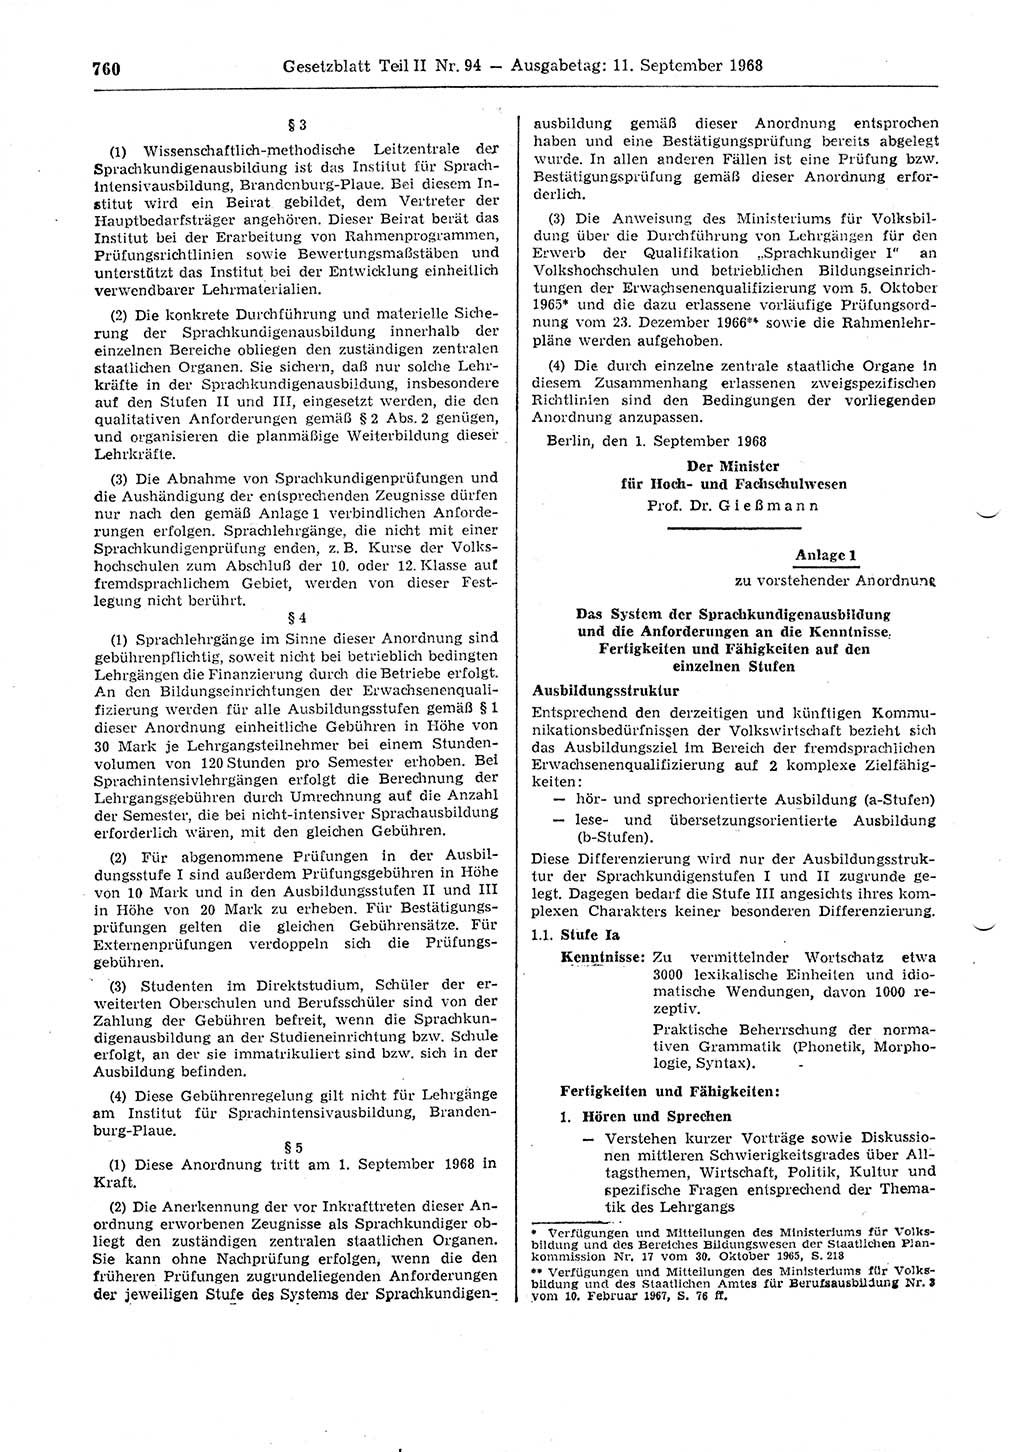 Gesetzblatt (GBl.) der Deutschen Demokratischen Republik (DDR) Teil ⅠⅠ 1968, Seite 760 (GBl. DDR ⅠⅠ 1968, S. 760)